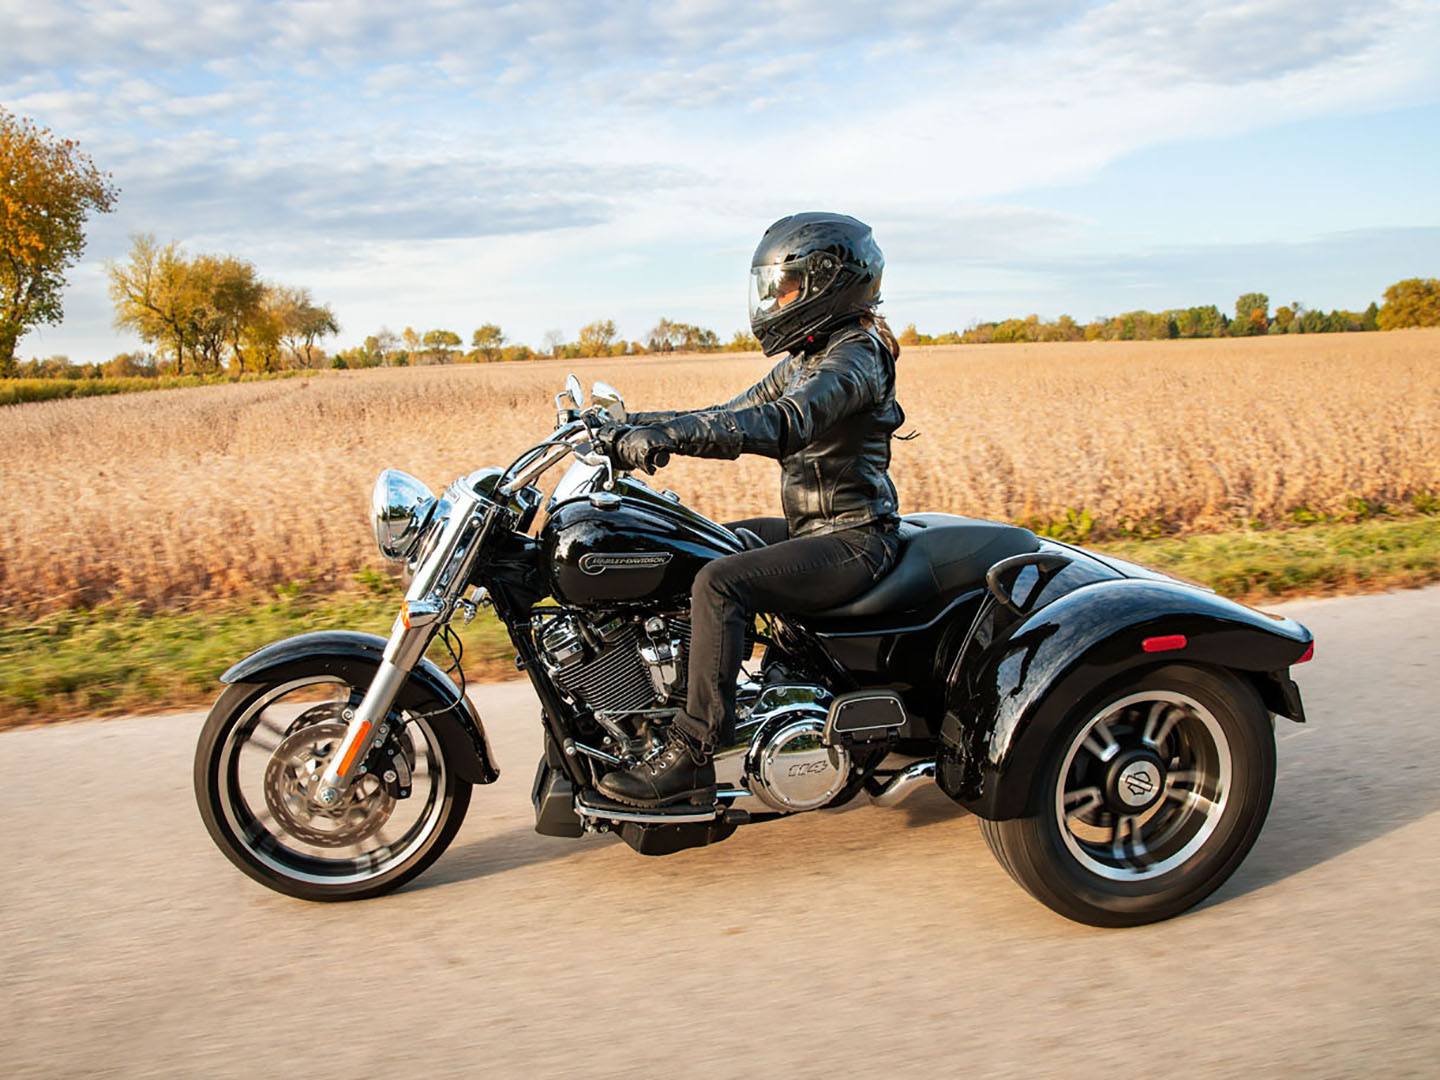 2021 Harley-Davidson Freewheeler® in Jackson, Mississippi - Photo 8